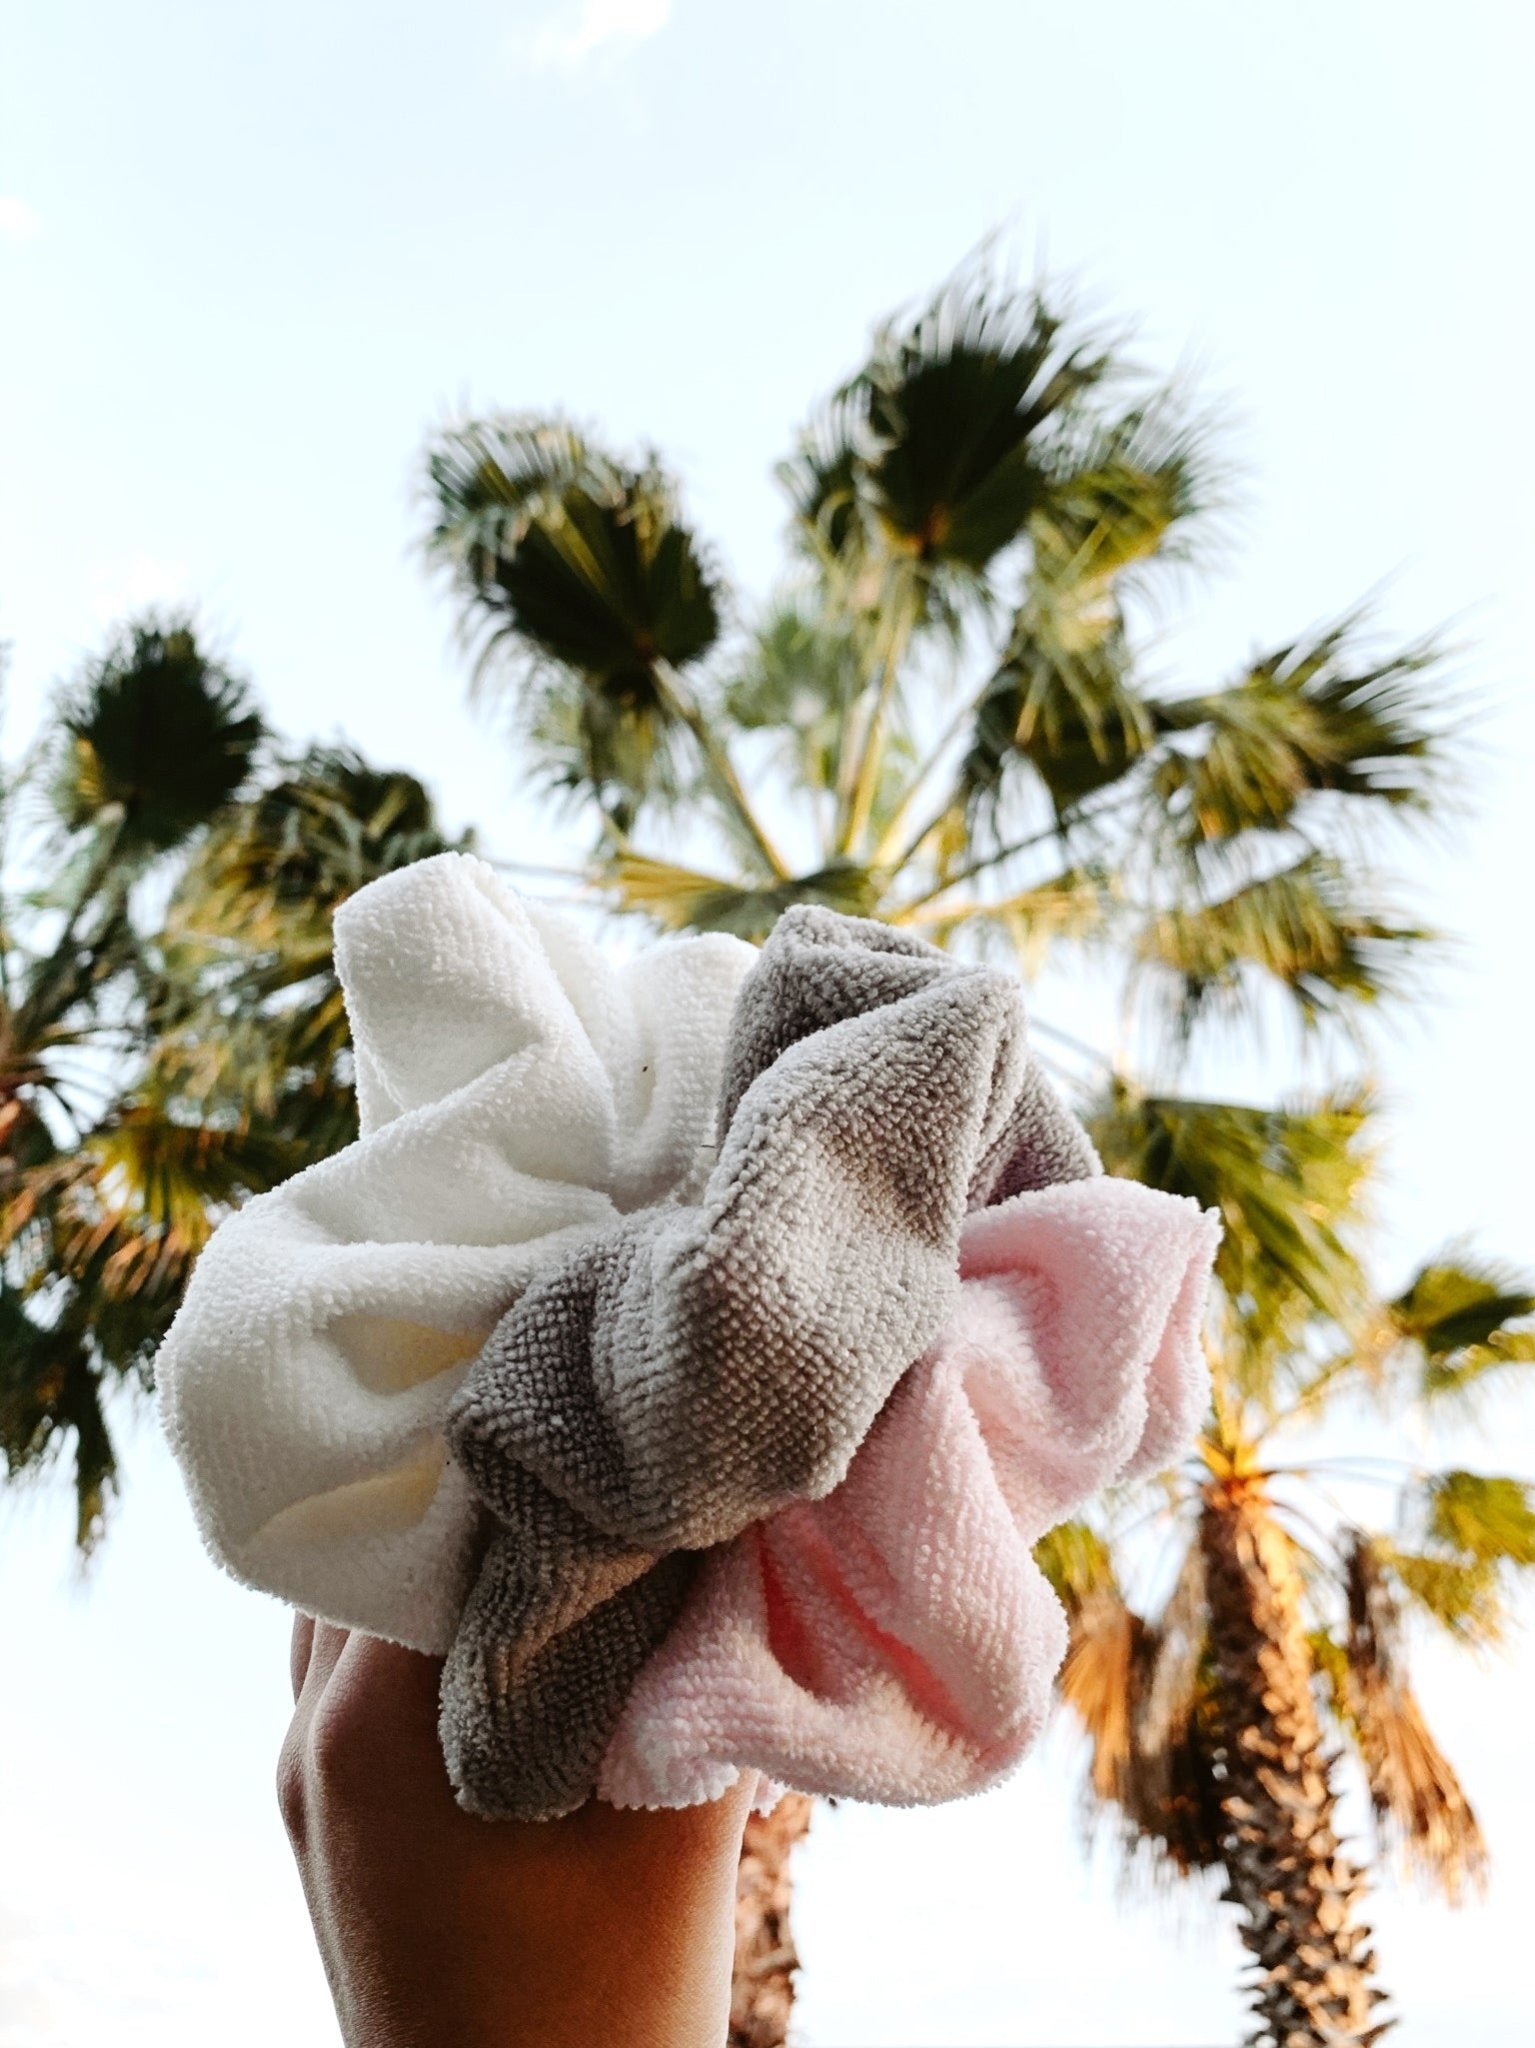 WHITE - Micro-Fibre Towel Scrunchie - Beyond Scrunchies